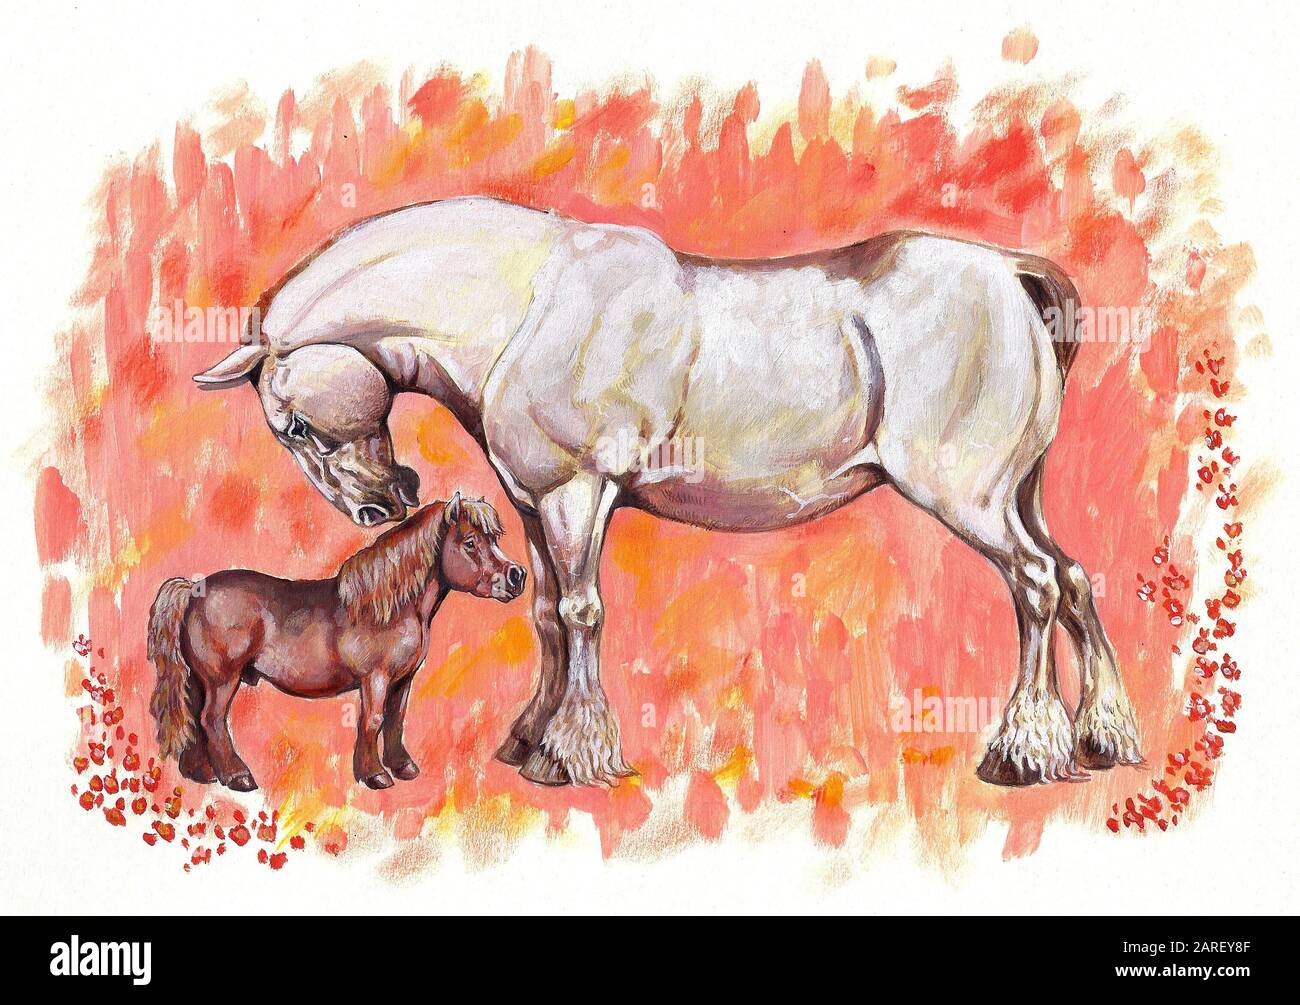 Les chevaux dans l'amour. Illustration du cheval de traction et du poney. Peinture acrylique. Banque D'Images